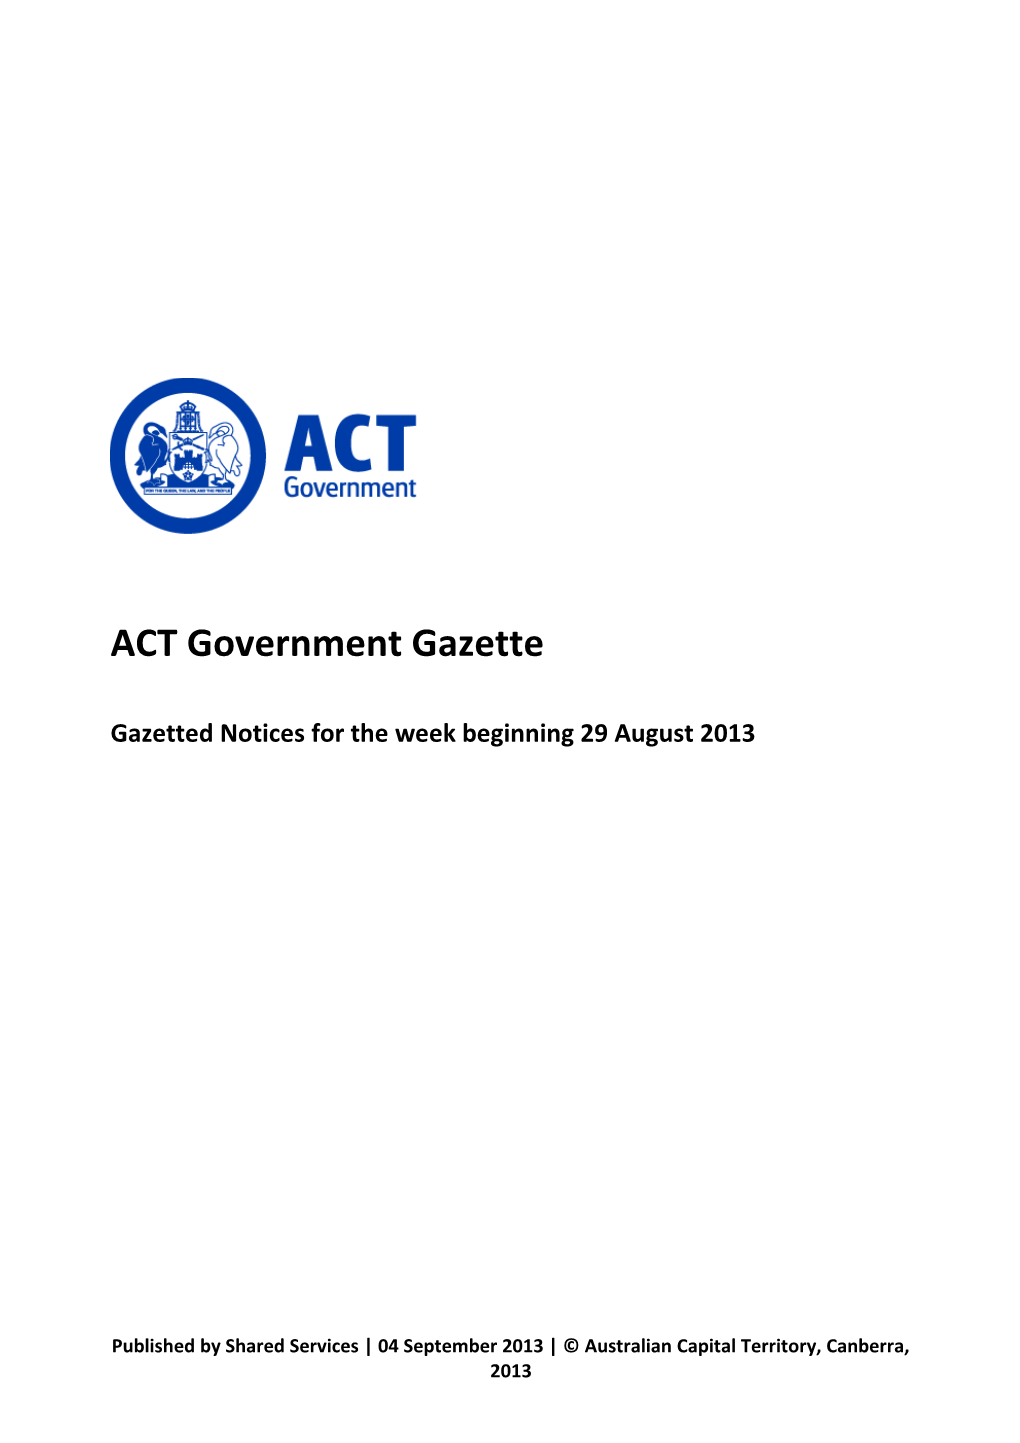 ACT Government Gazette 5 Sep 2013